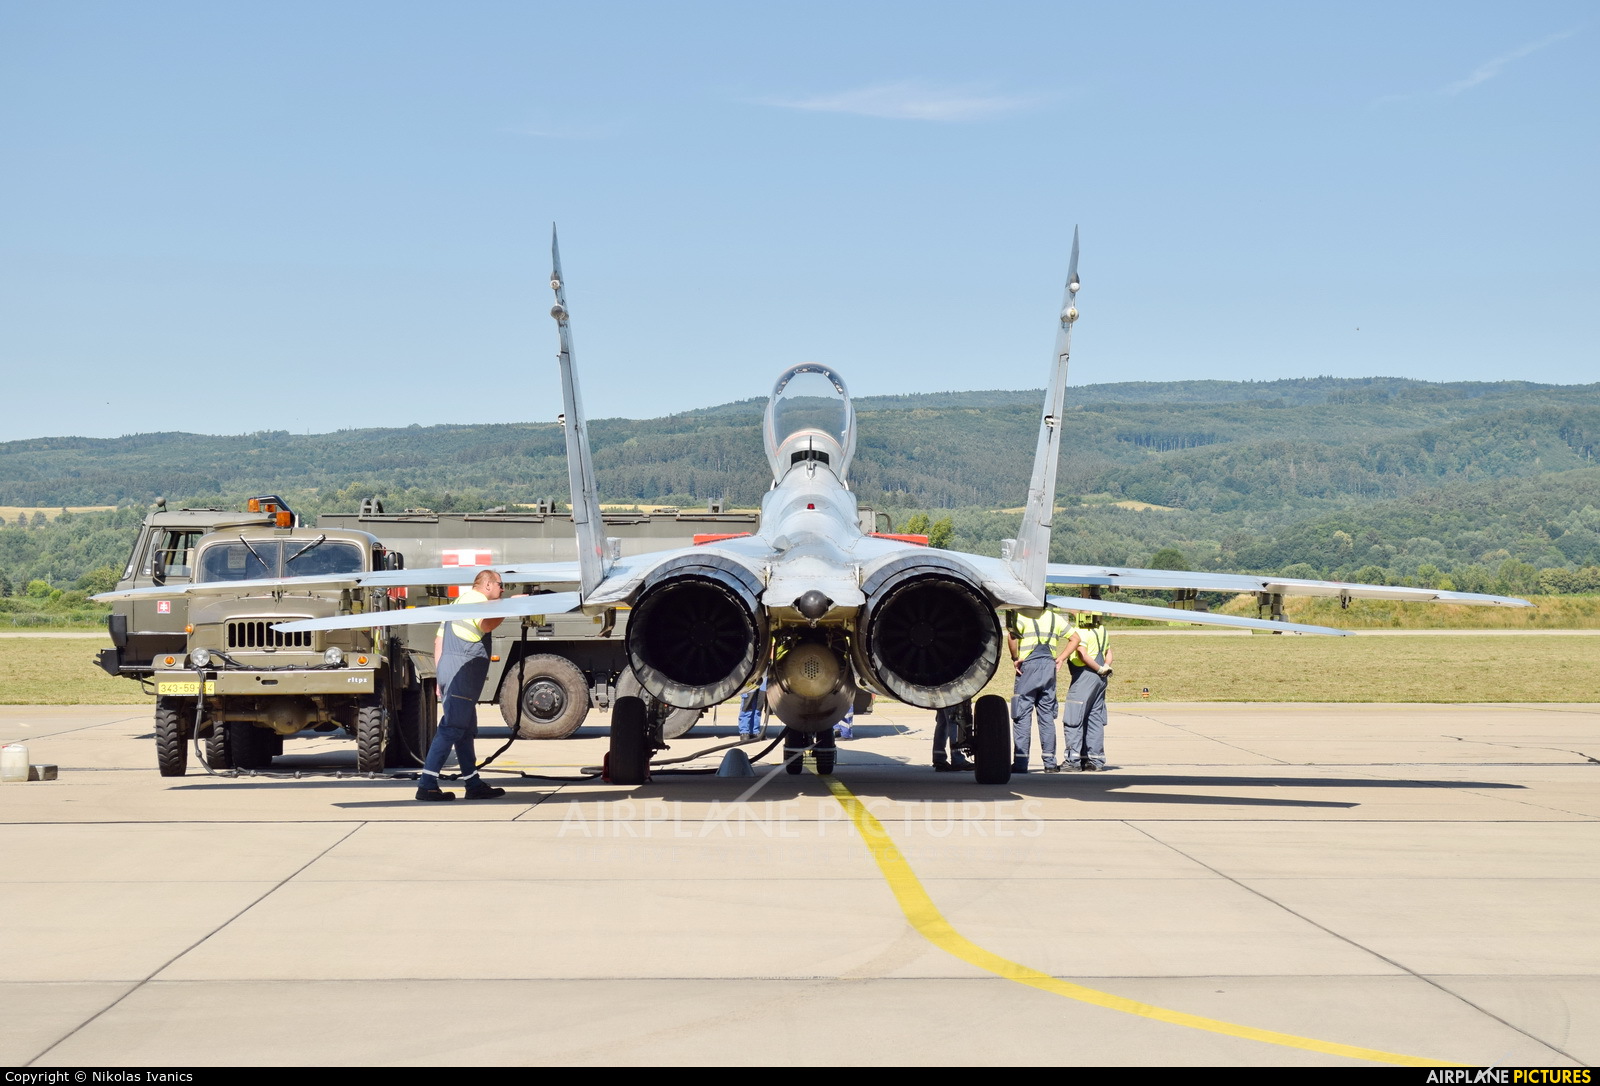 Slovakia -  Air Force 3709 aircraft at Sliač